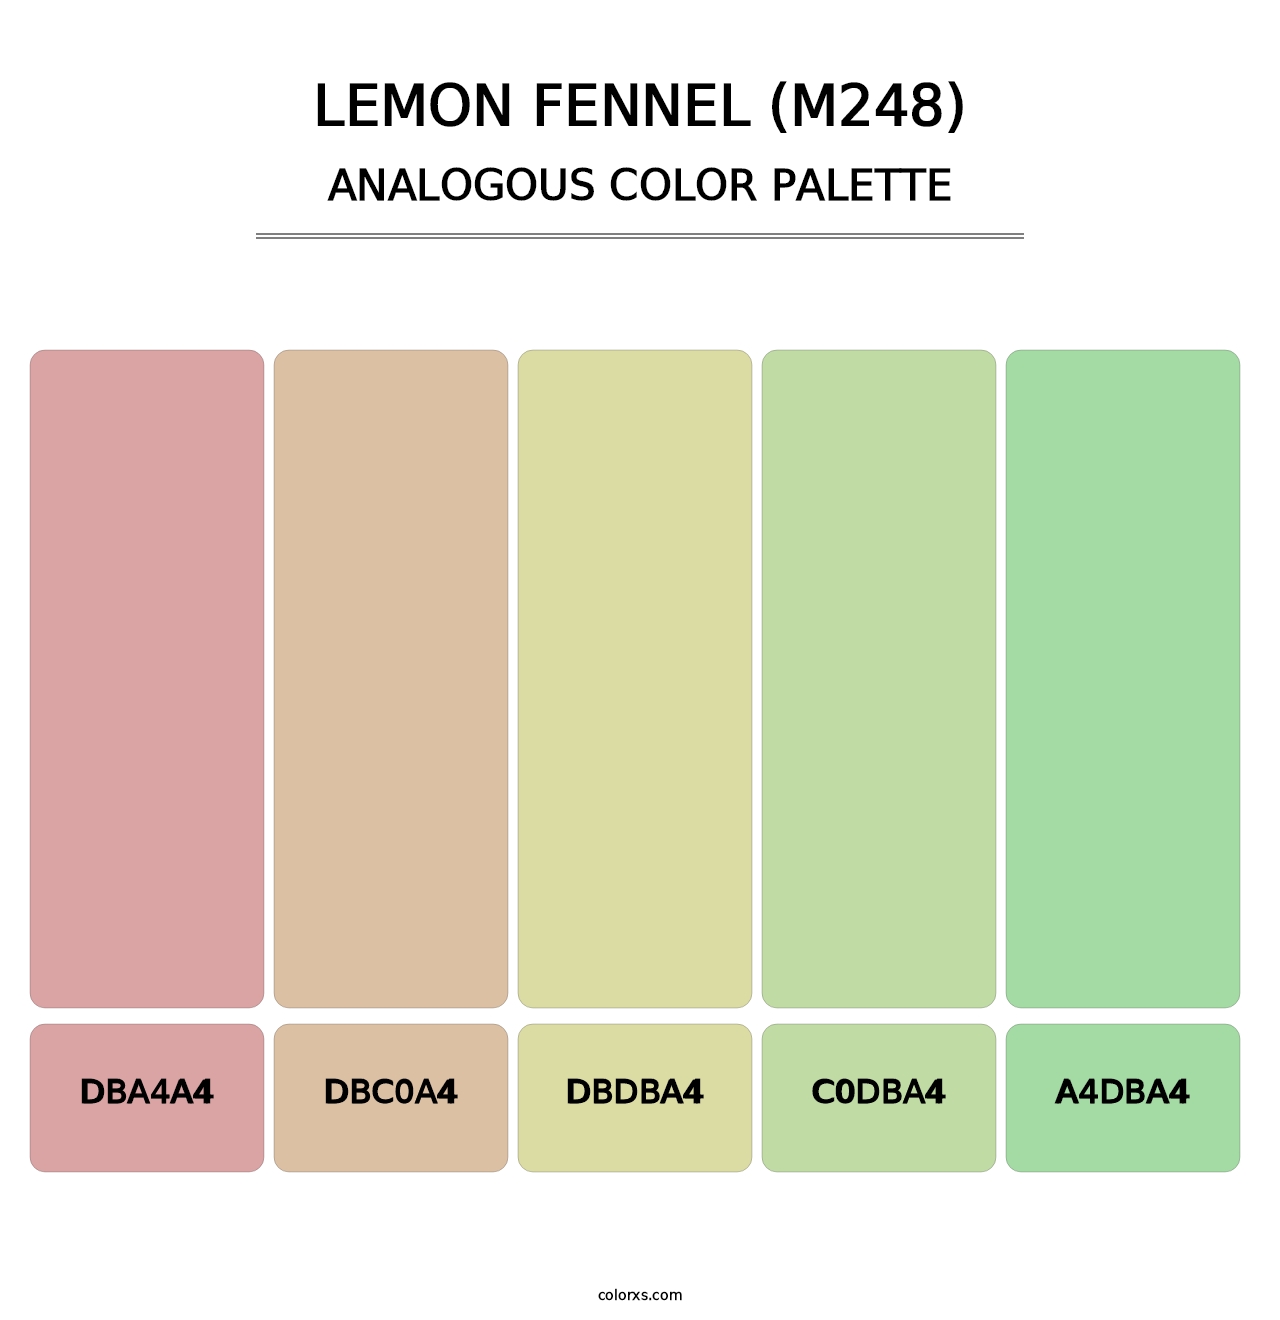 Lemon Fennel (M248) - Analogous Color Palette